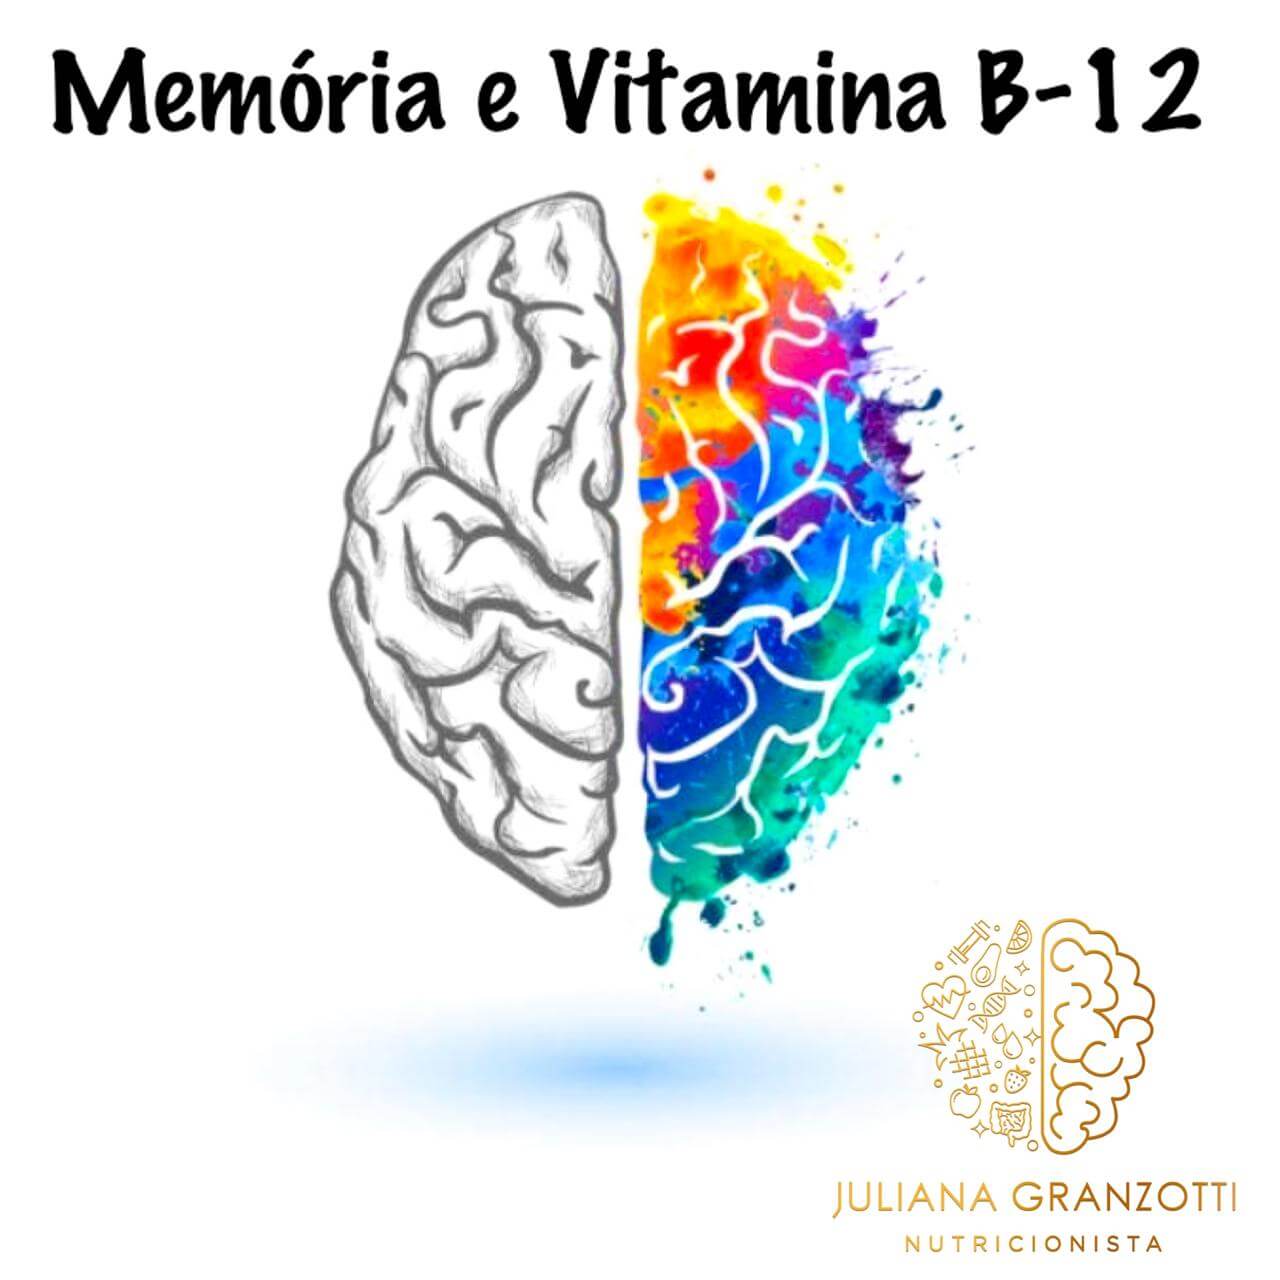  Memória e vitamina B-12 